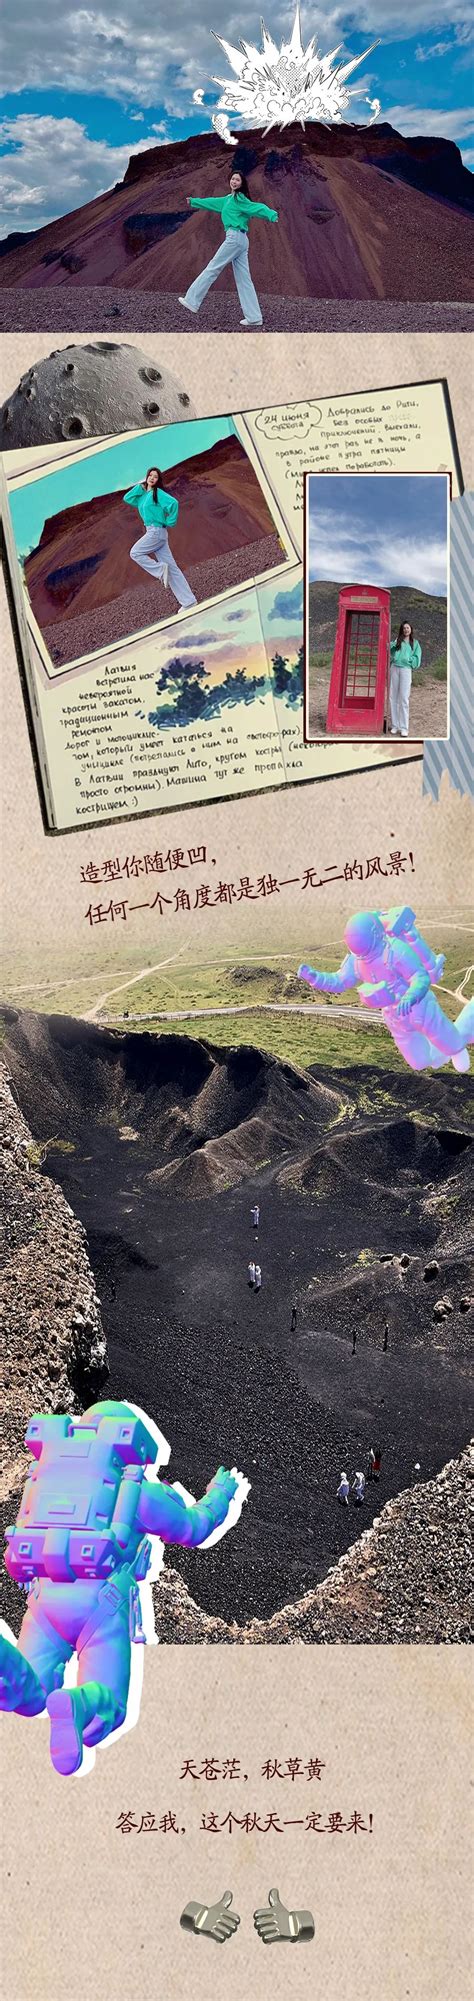 中国内蒙古乌兰察布乌兰哈达火山三号火山火山口俯拍航拍—高清视频下载、购买_视觉中国视频素材中心